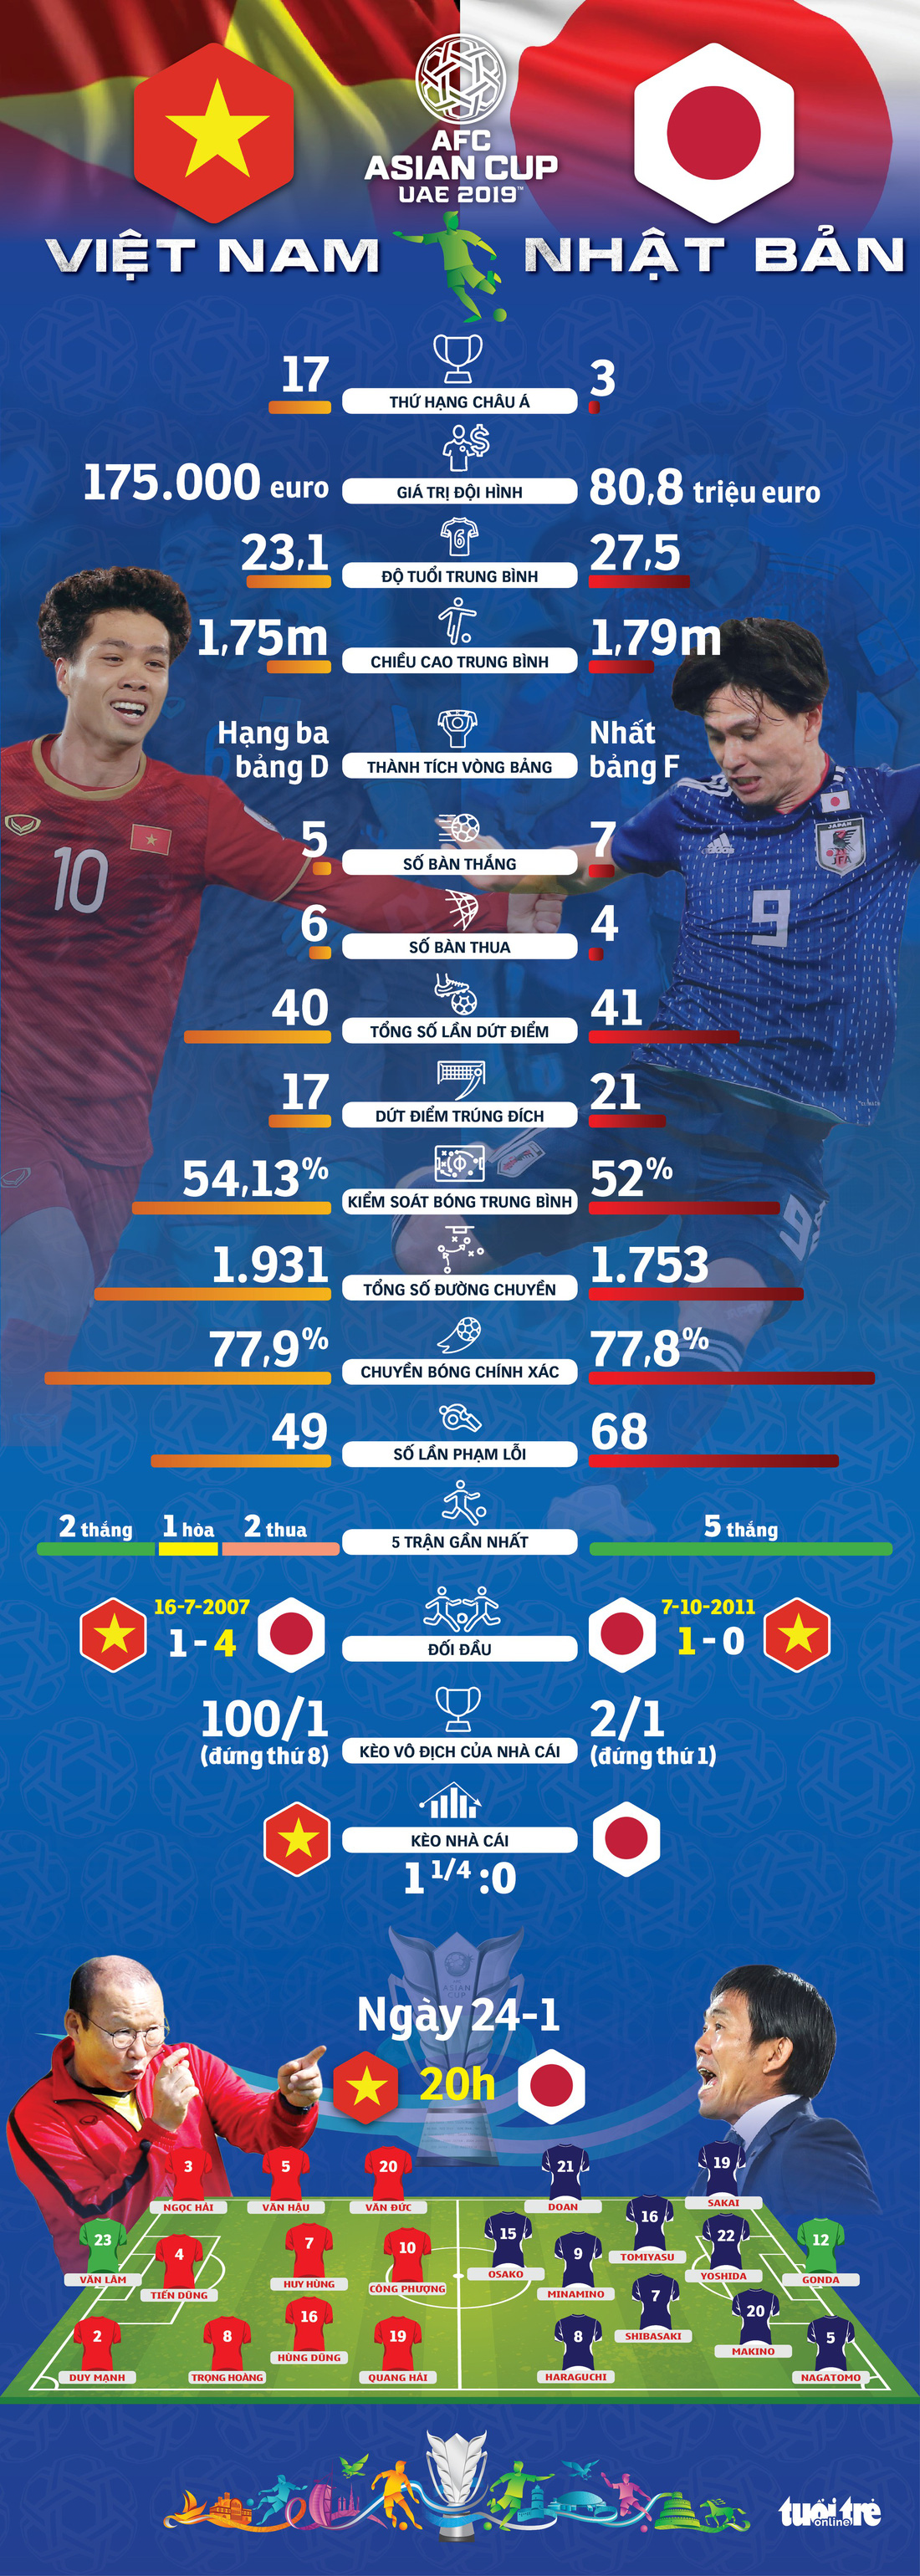 Infographic: Nhật Bản không quá vượt trội so với Việt Nam - Ảnh 1.